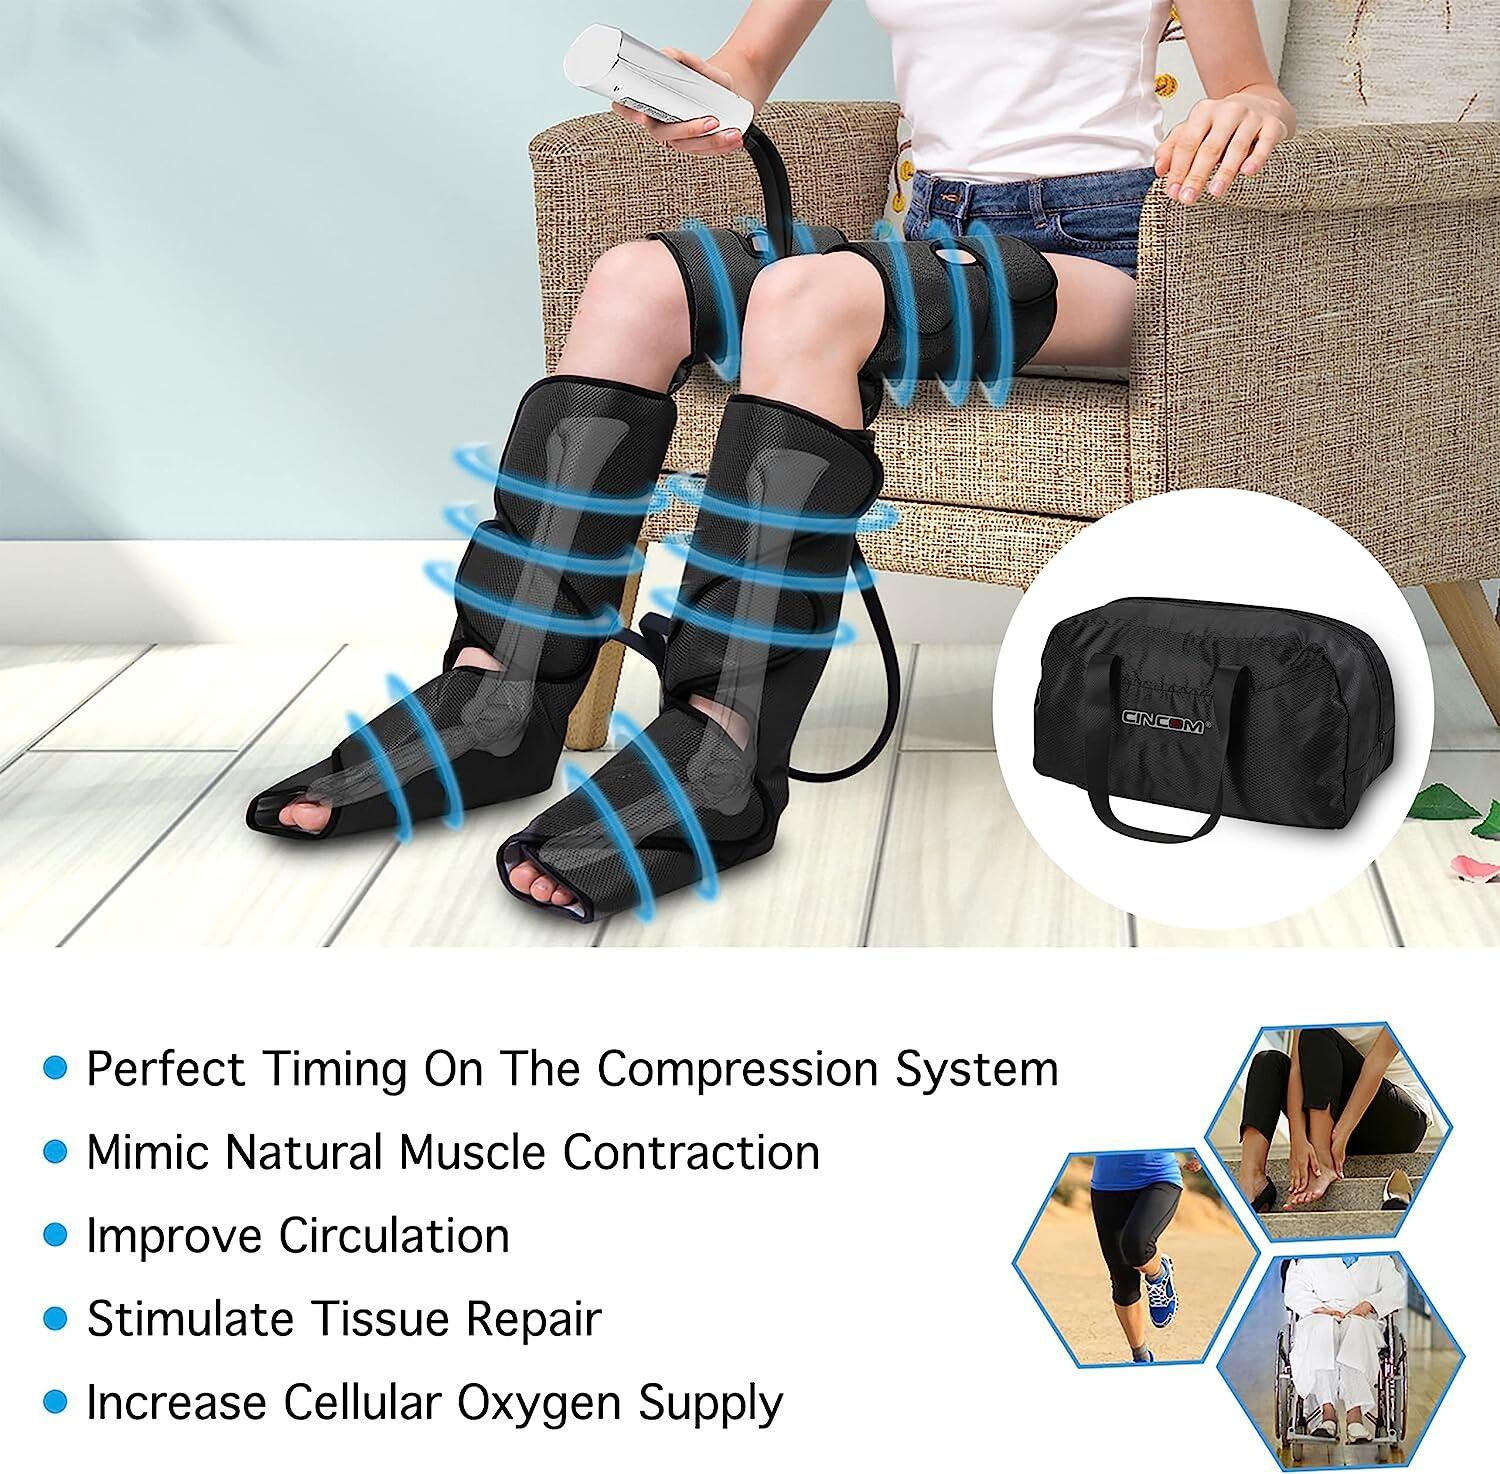 CINCOM Rechargeable Leg Massager for Circulation, Wireless Air Leg Compression Massager, Calf Massager for Leg Pain Relief,Circulation, and Muscles